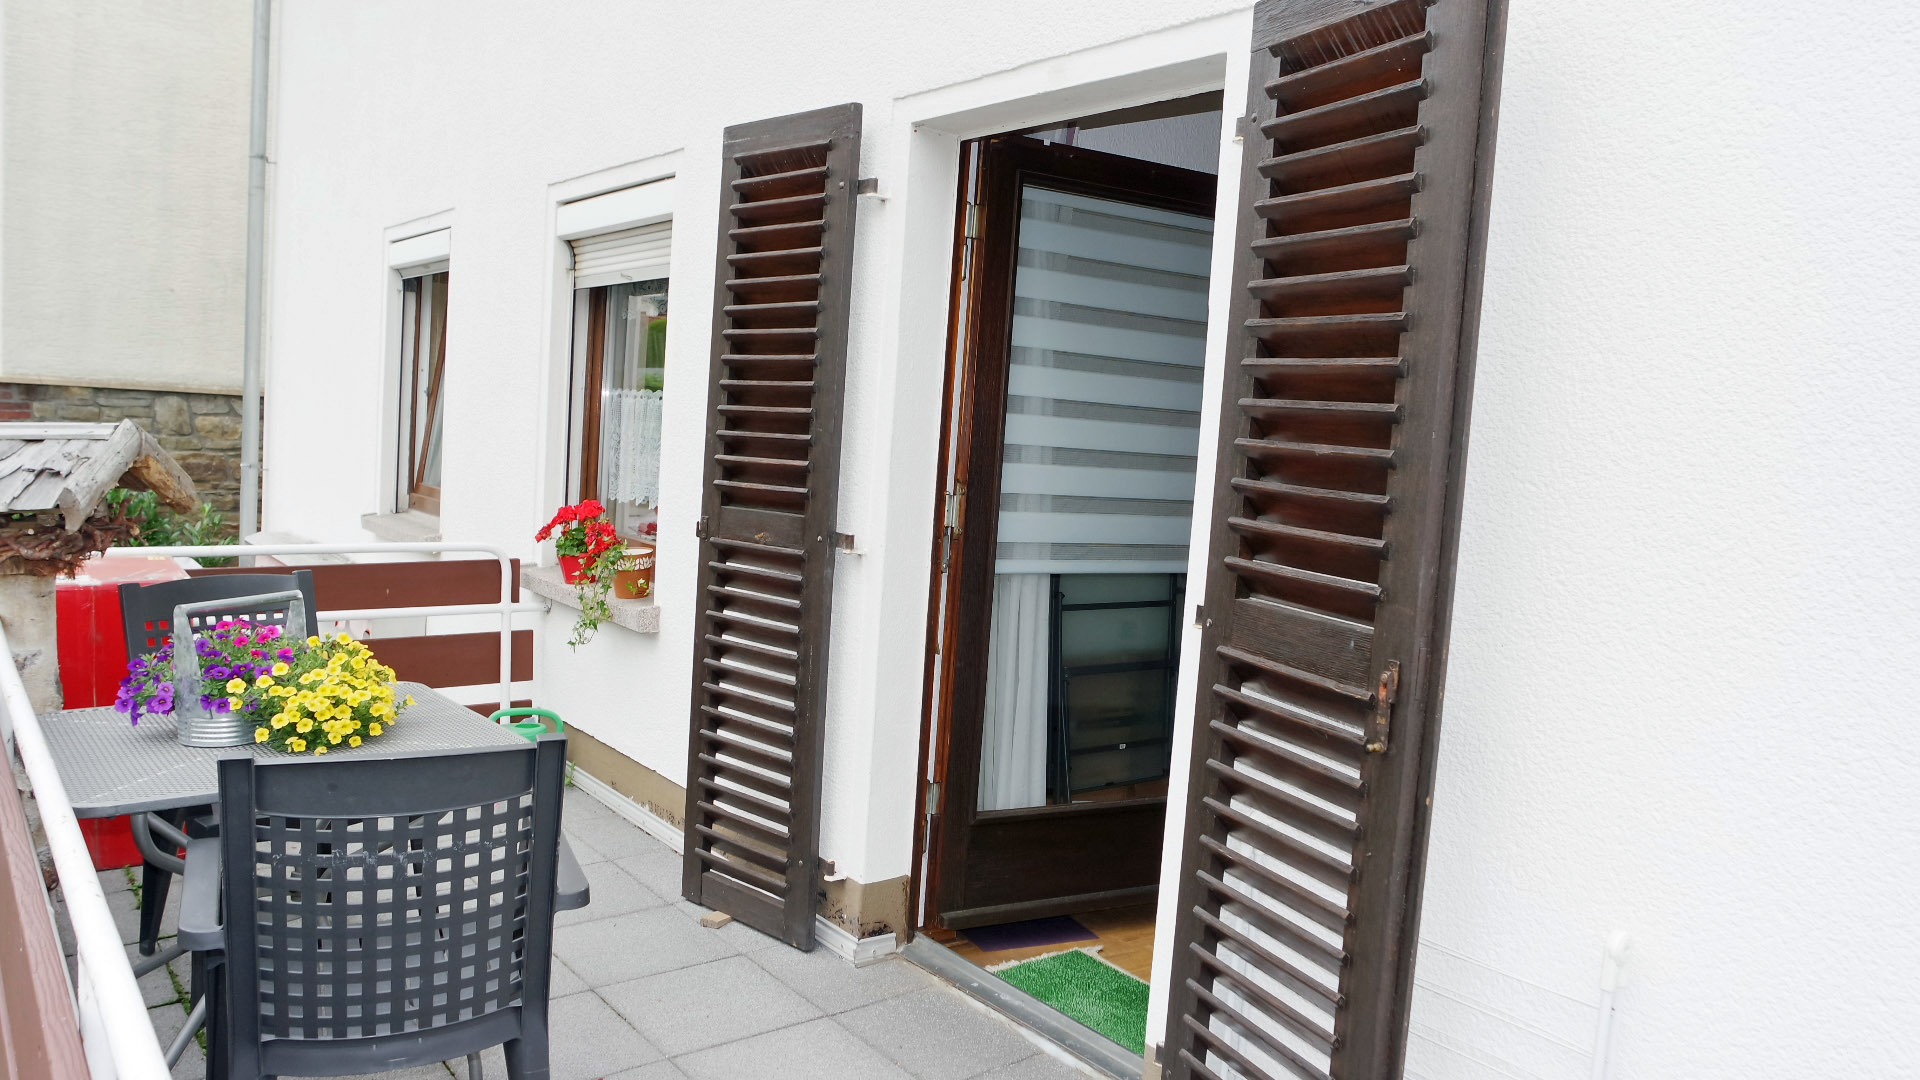 Betzdorf: Zweifamilienhaus in guter, zentraler Wohnlage, ...mit Zugang zum Balkon (5,5 x 2,0 m groß)